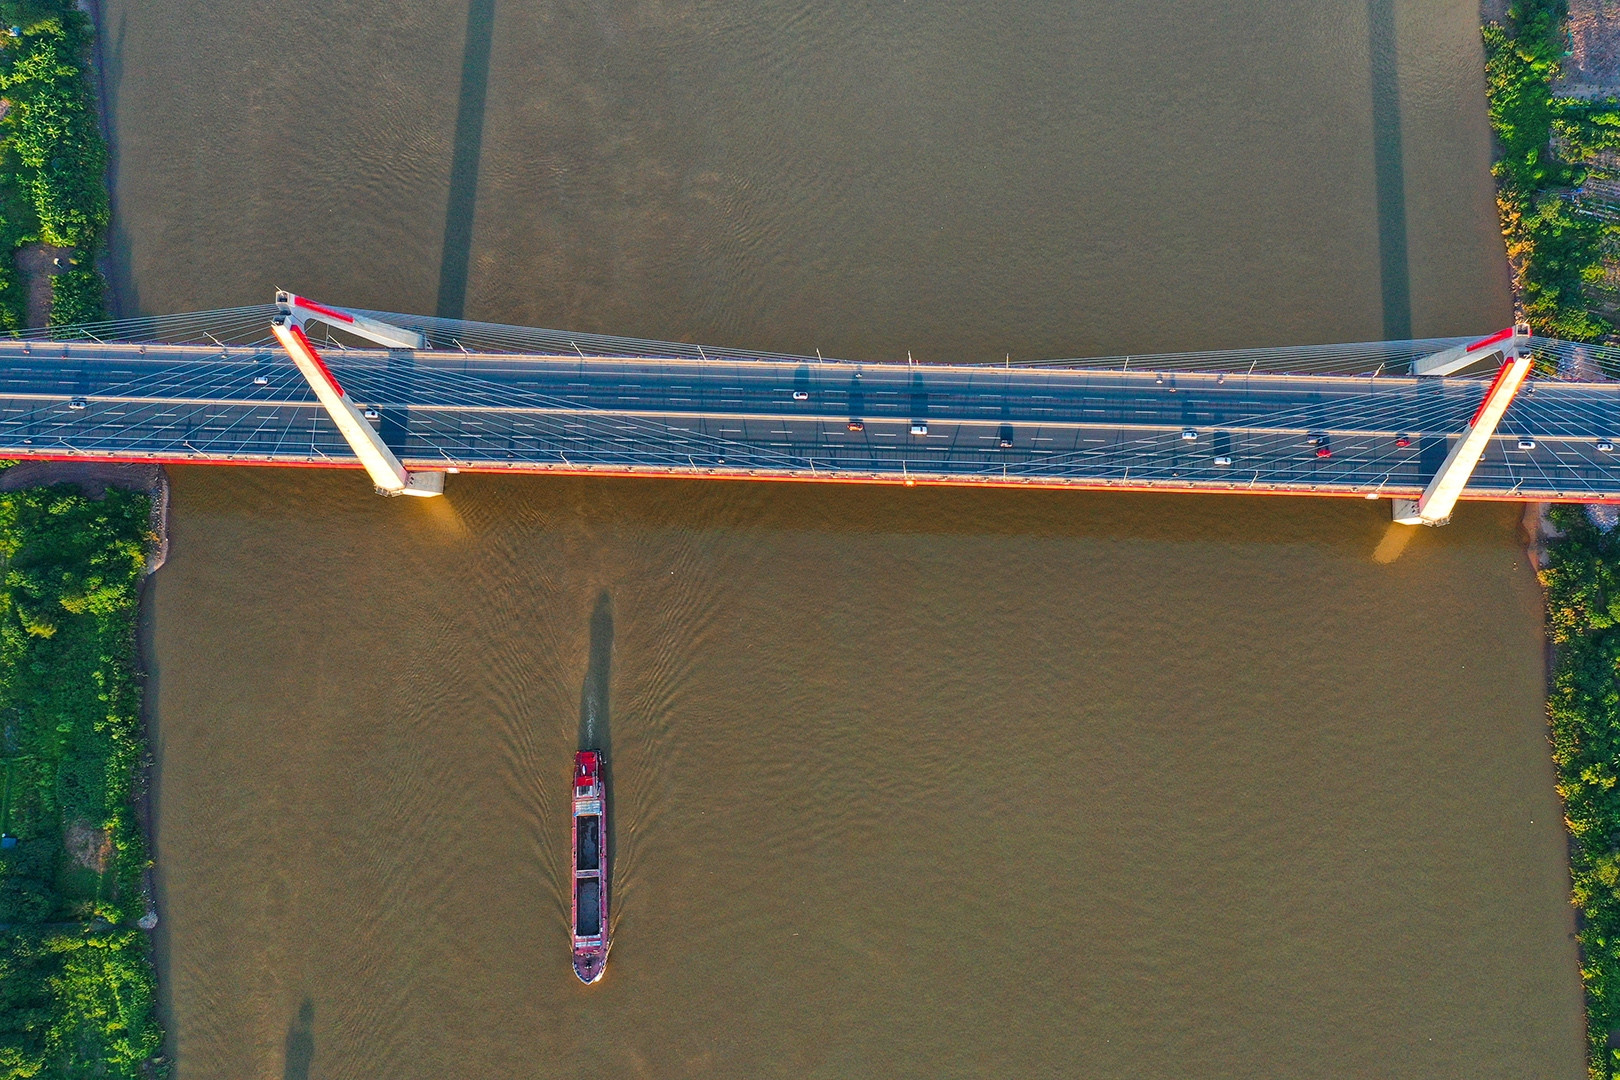 Hà Nội sắp thông xe cầu lớn nhất qua sông Hồng